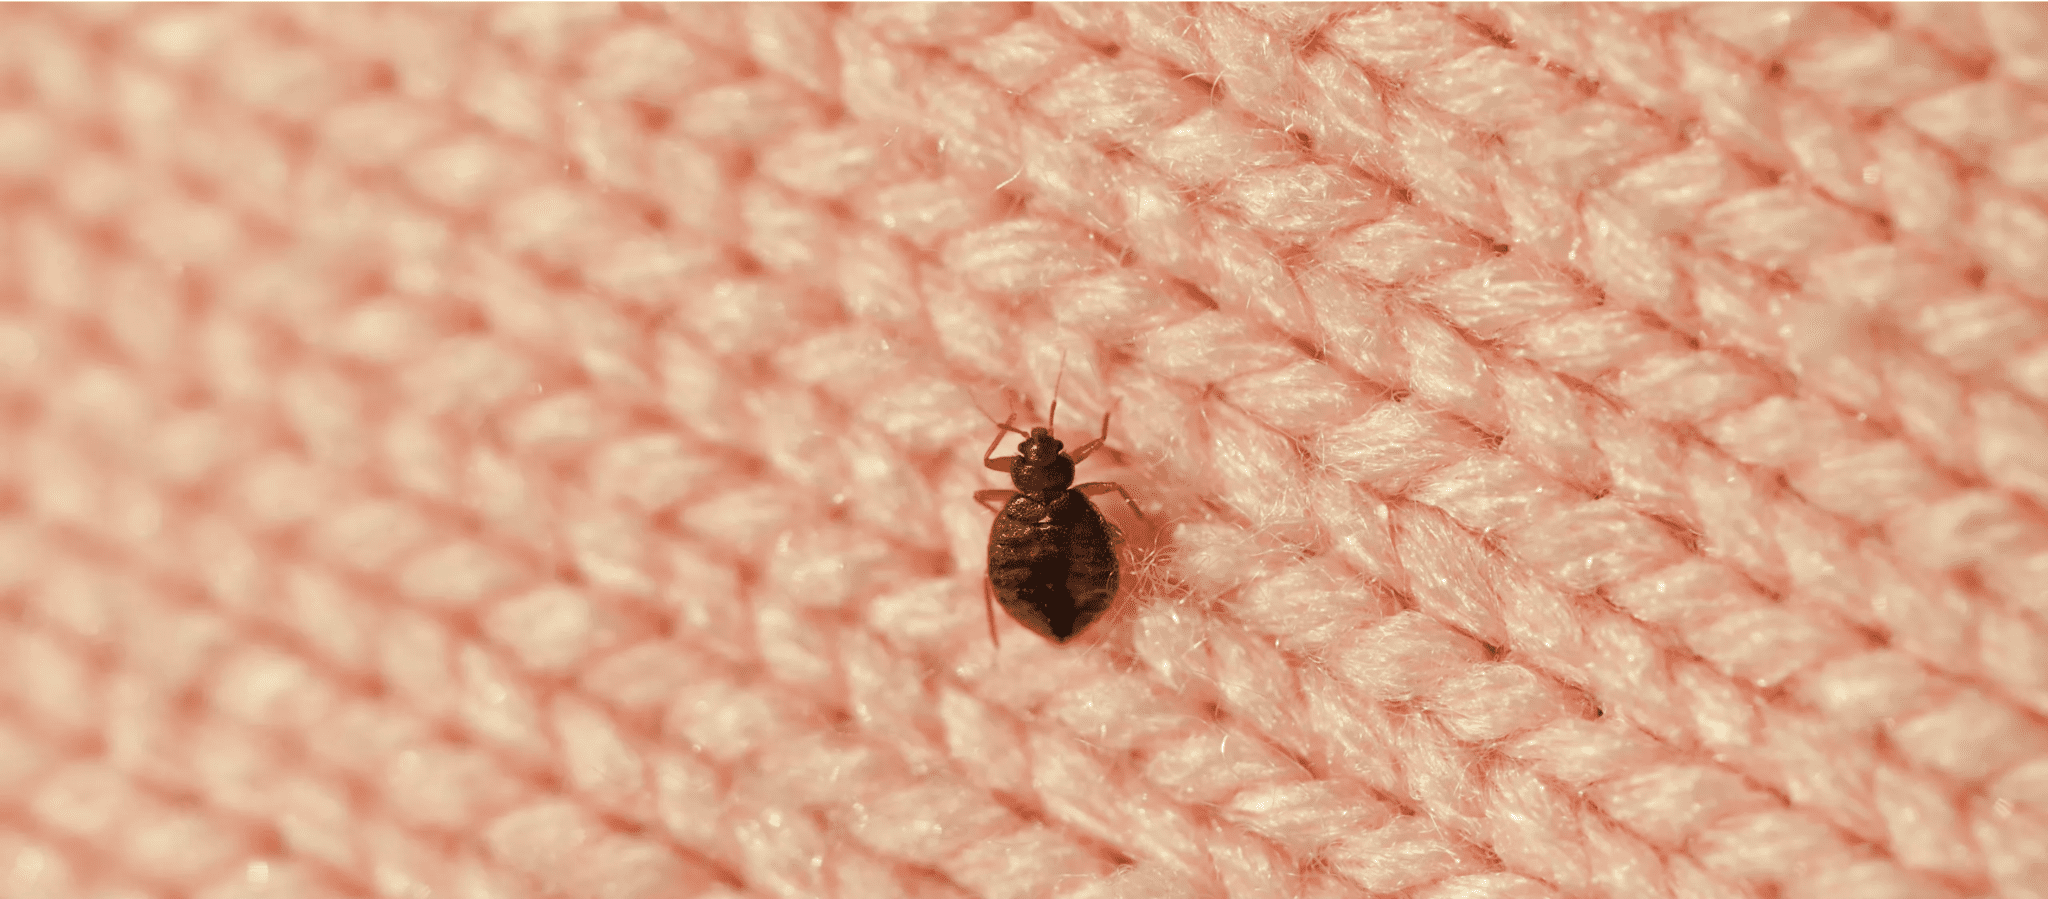 Guide de traitement des punaises de lit avec insecticide